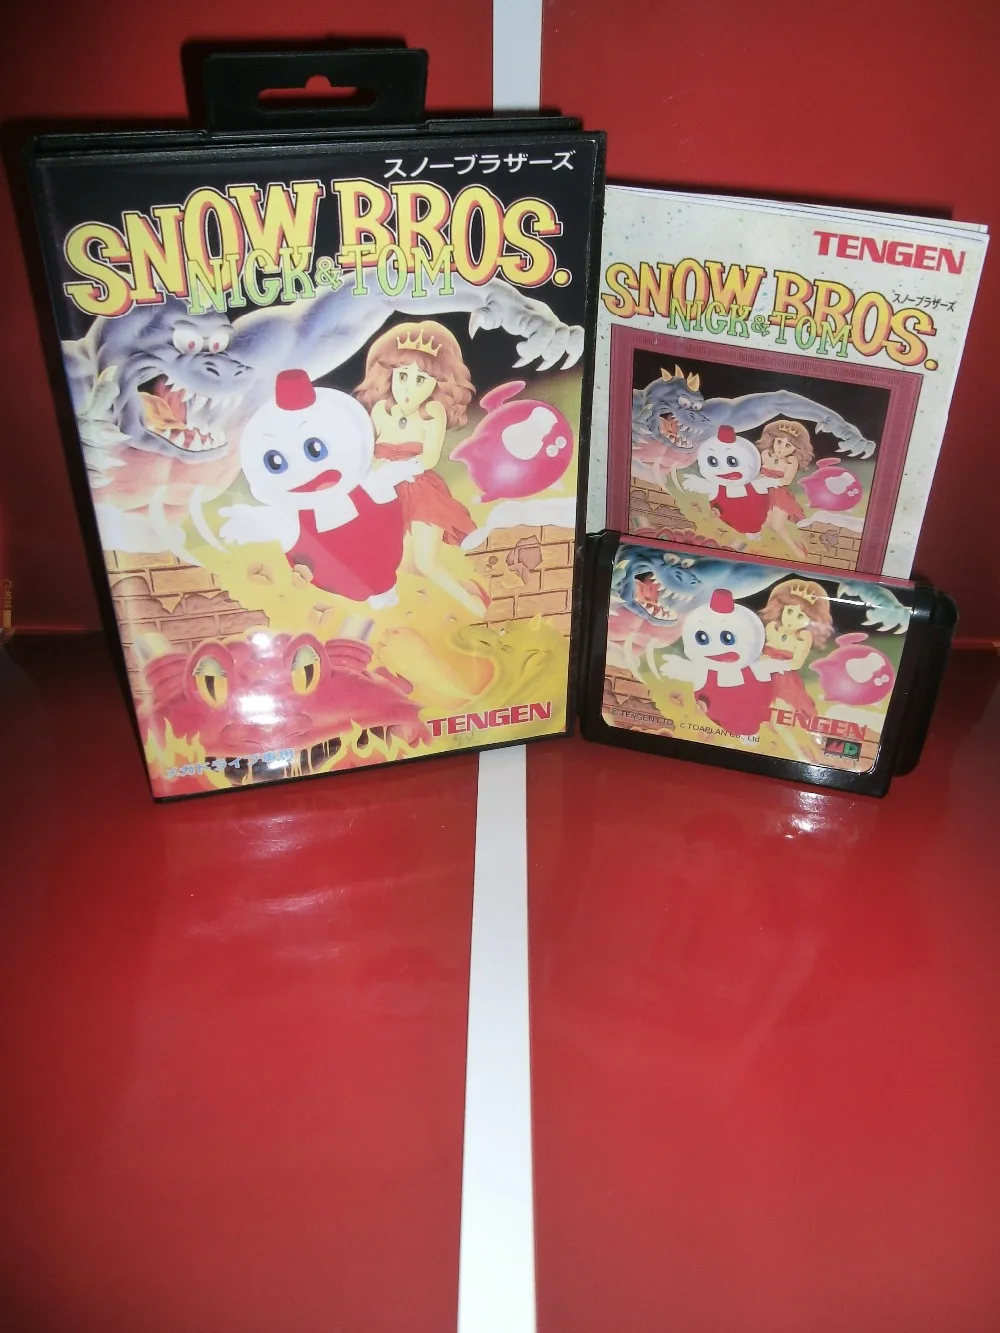 Снег Bros. игра картридж с коробкой и руководством 16 бит md карты для Sega megadrive для Genesis